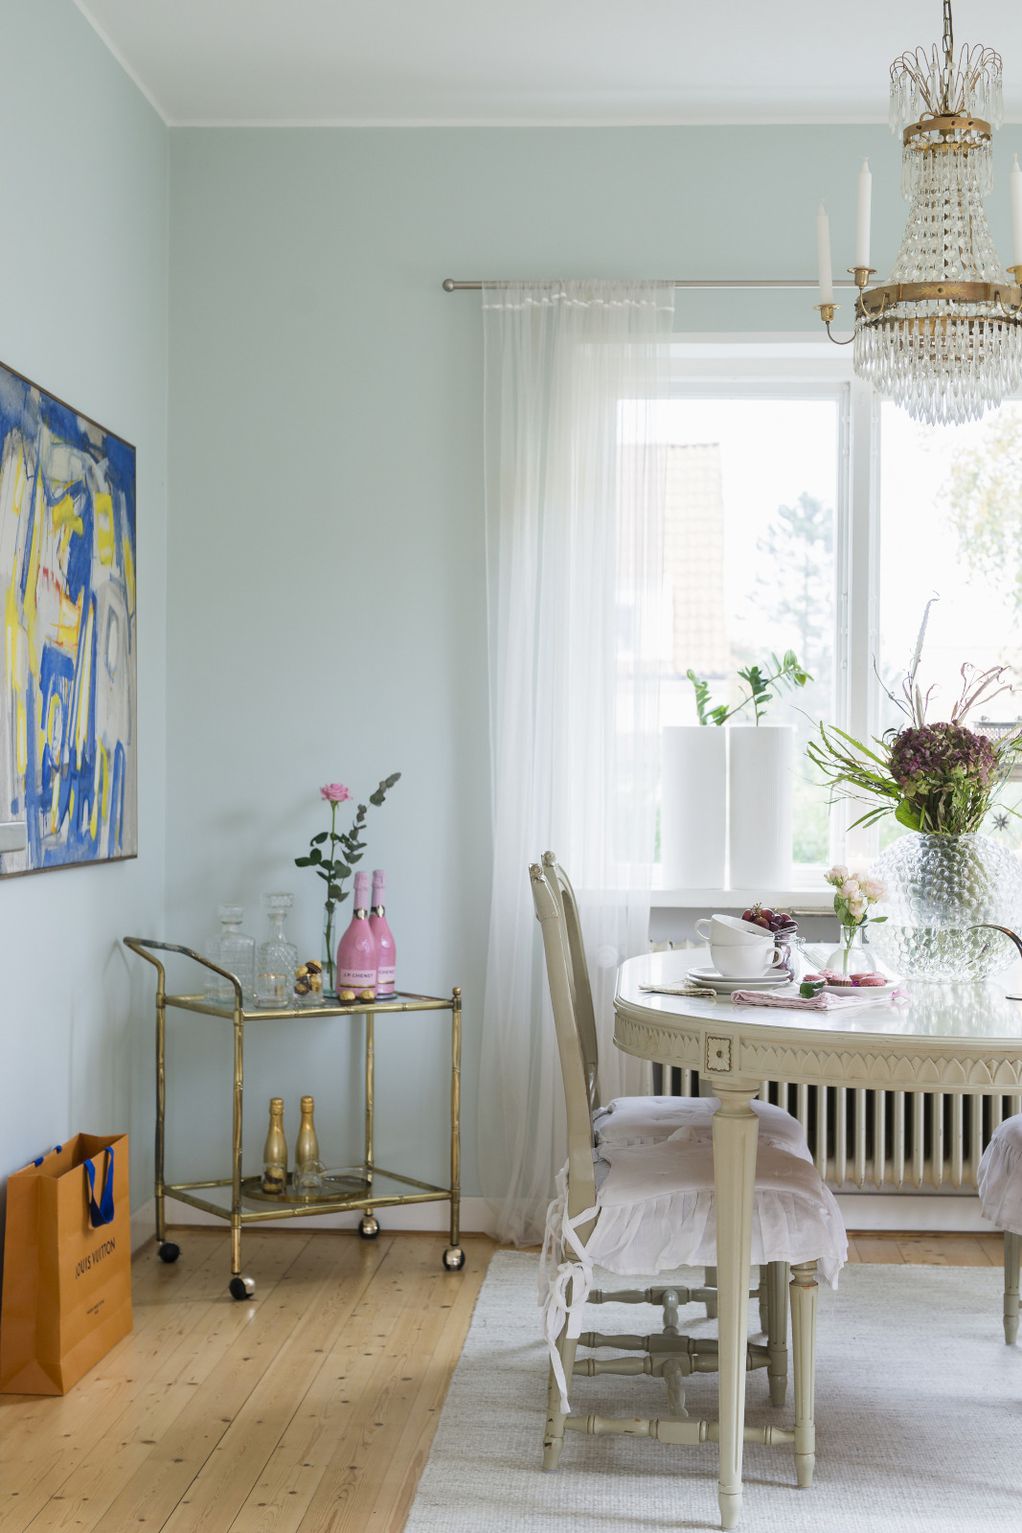 12 докази дека зелените ѕидови изгледаат убаво во секоја просторија во домот